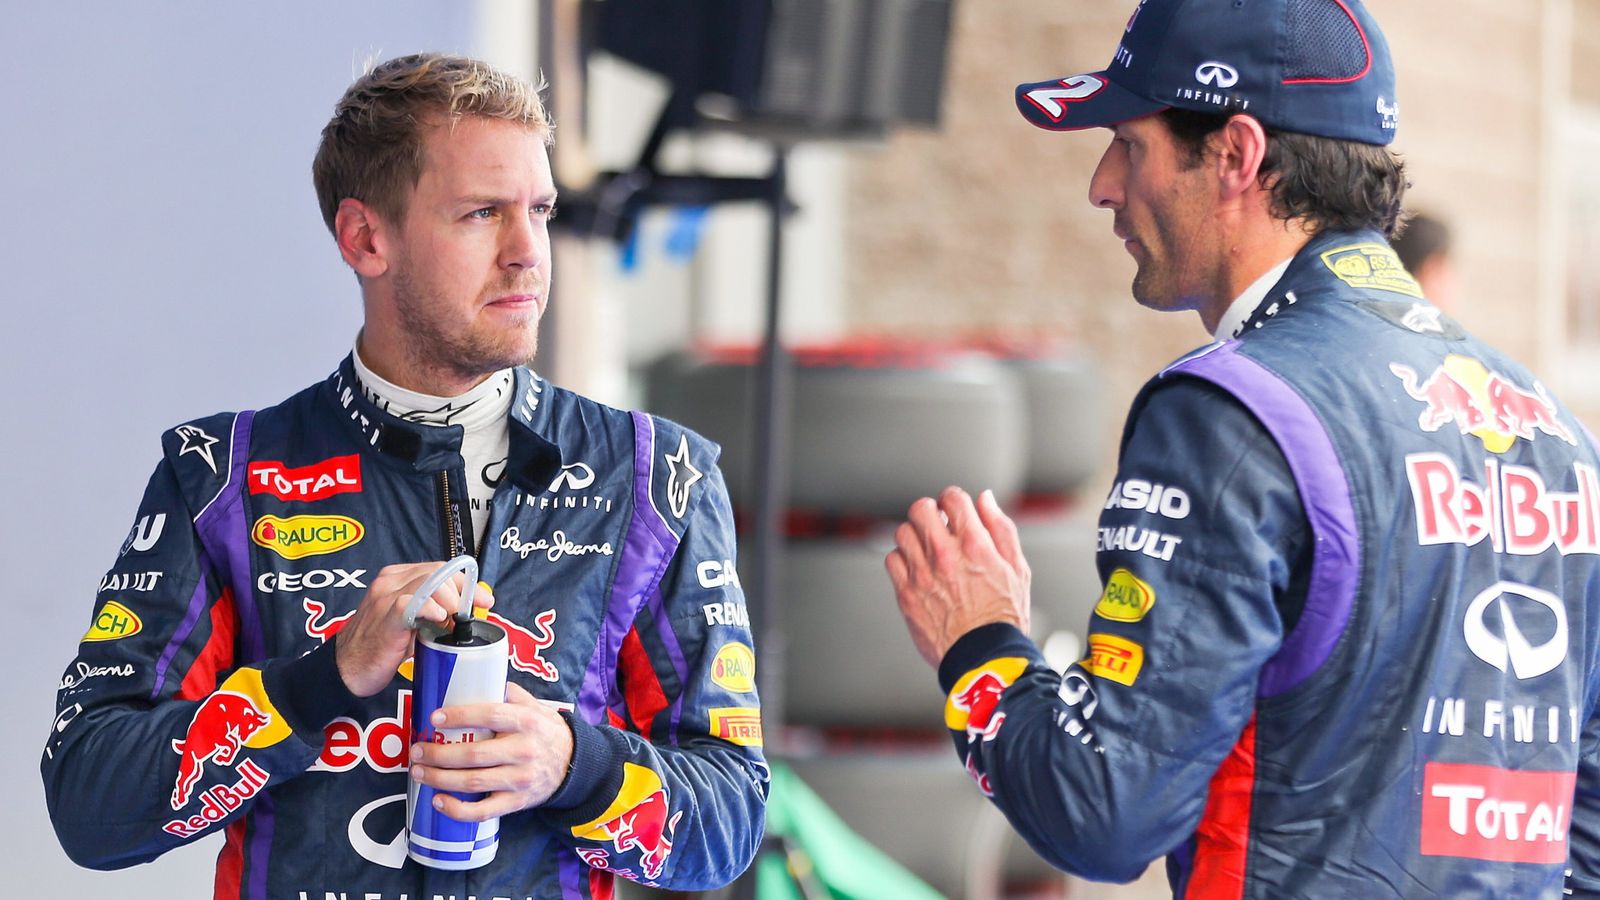 Foto: Sebastian Vettel y Mark Webber durante su etapa como compañeros (Efe)